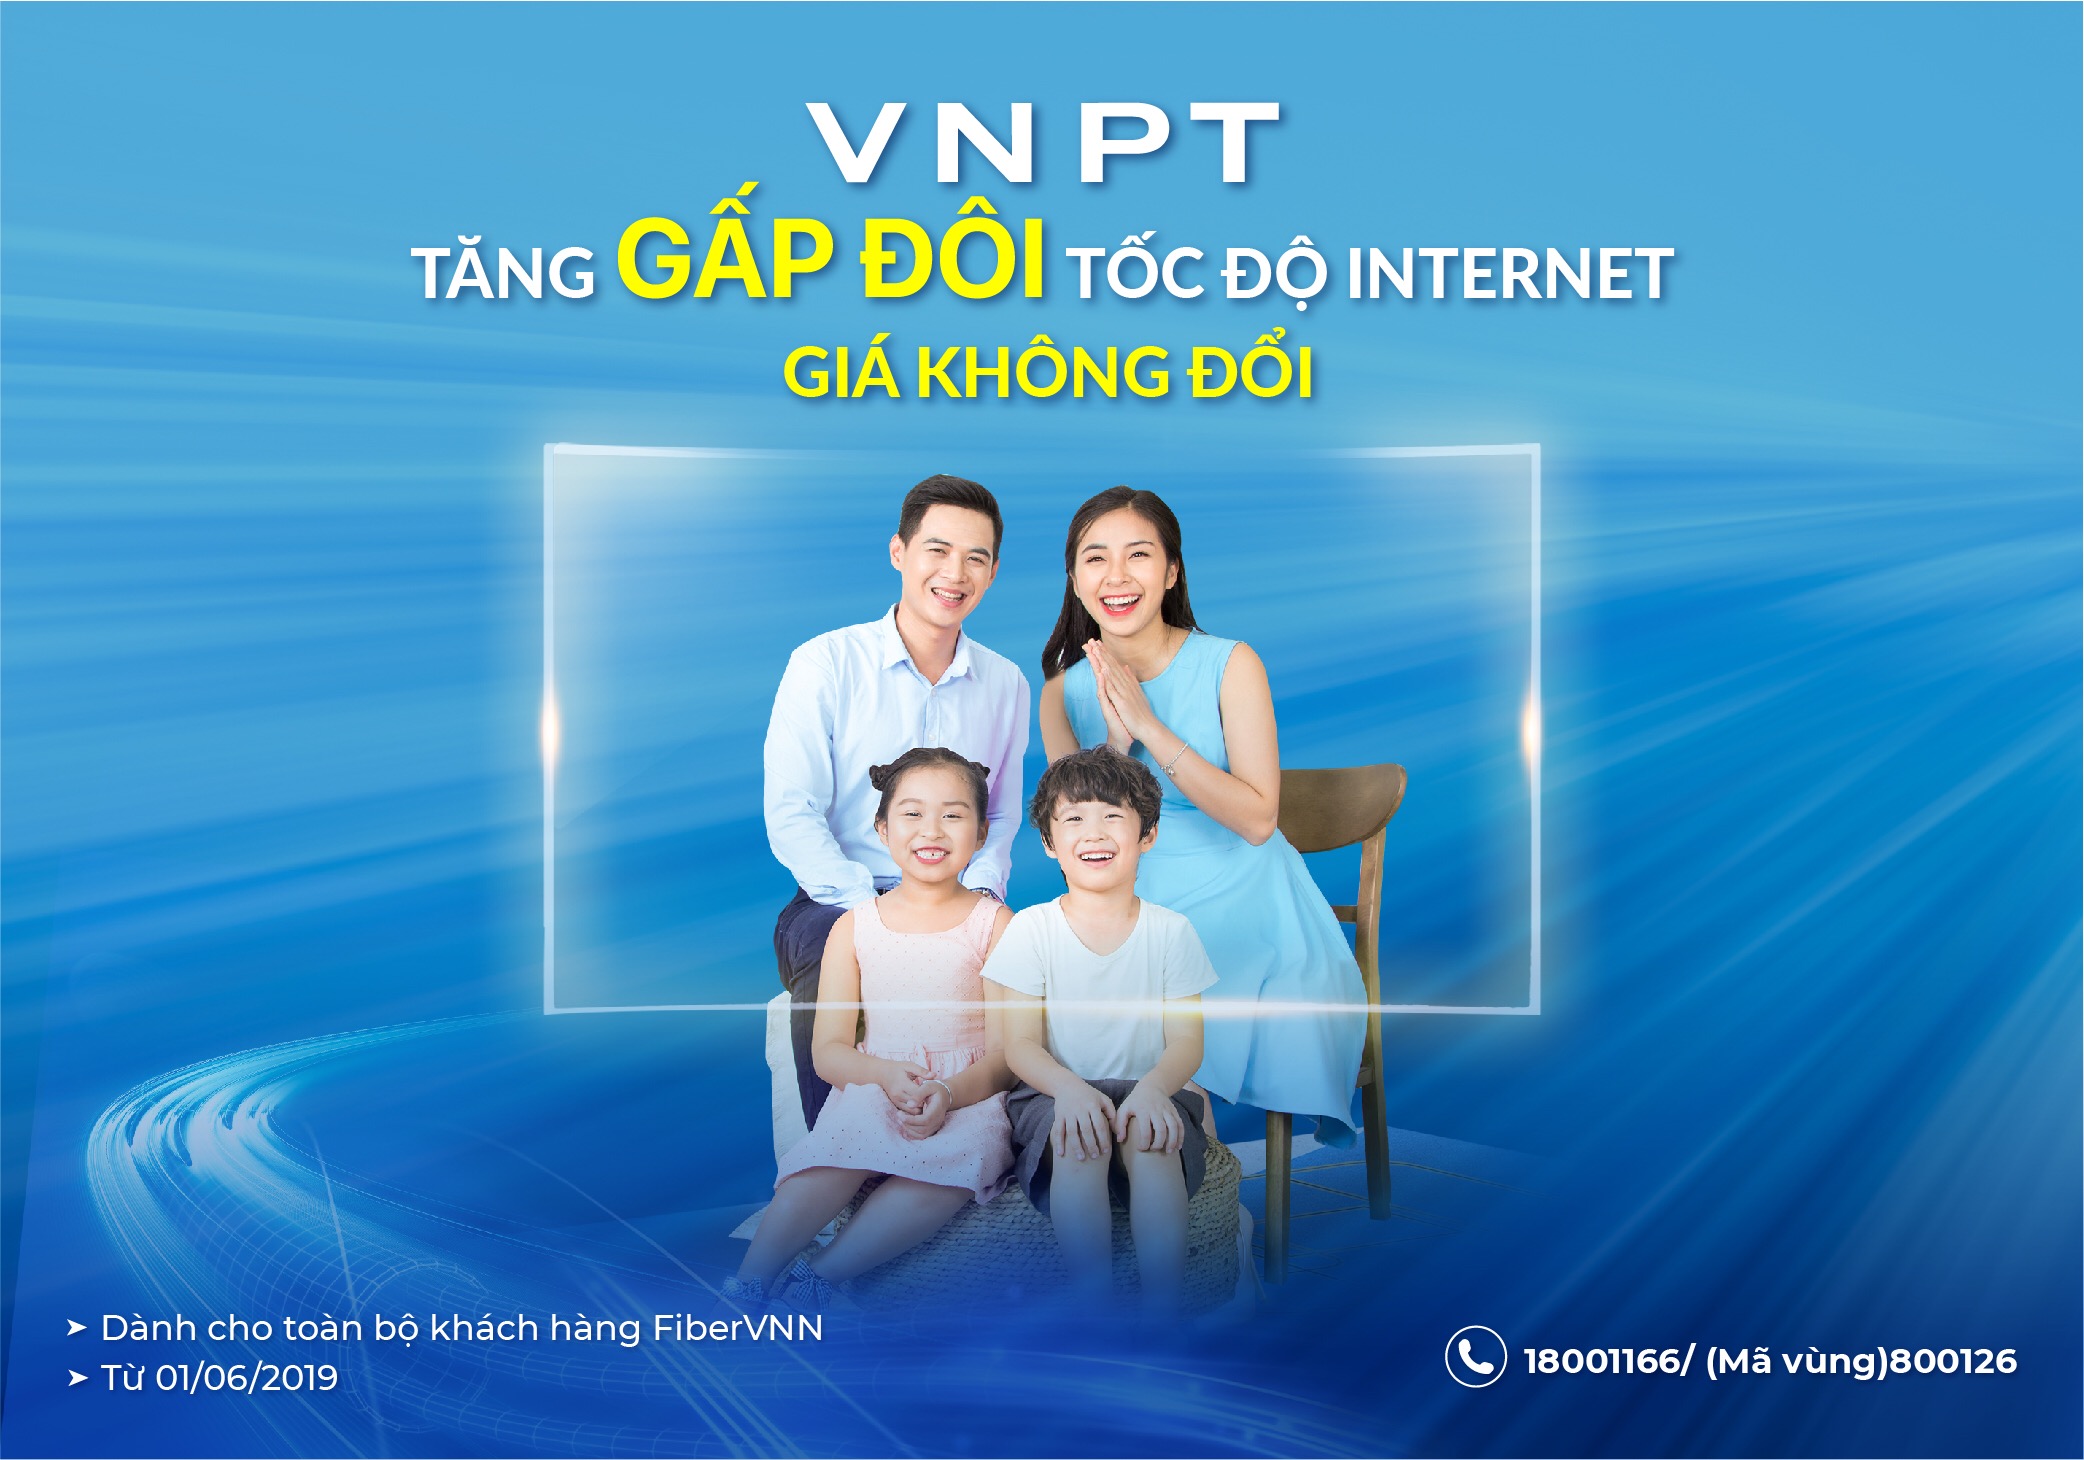 6 gói cước mạng Internet của VNPT và các lưu ý khi lựa chọn - VNPT